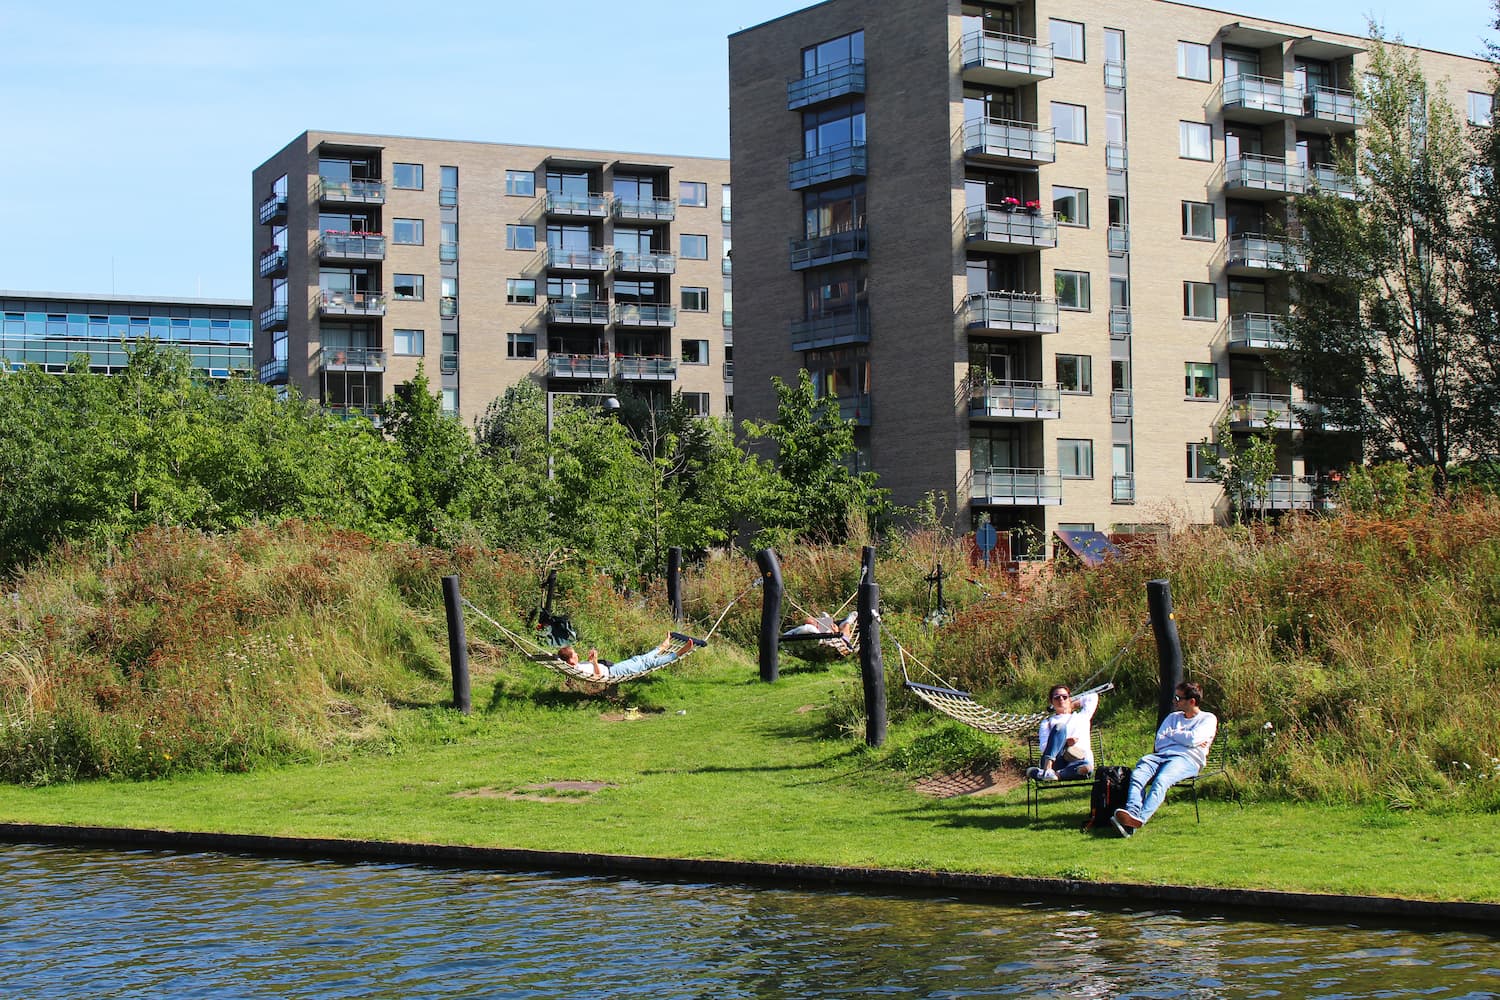 Grundejerforeningen Ørestad Nord har udviklet parken Grønningen siden 2012. I den nordlige del af parken ved Tietgenkollegiet finder du blandt andet en "hængekøje-ø". Den nye strategiplan sætter rammerne for endnu mere bynatur og liv mellem bygningerne i kvarteret.